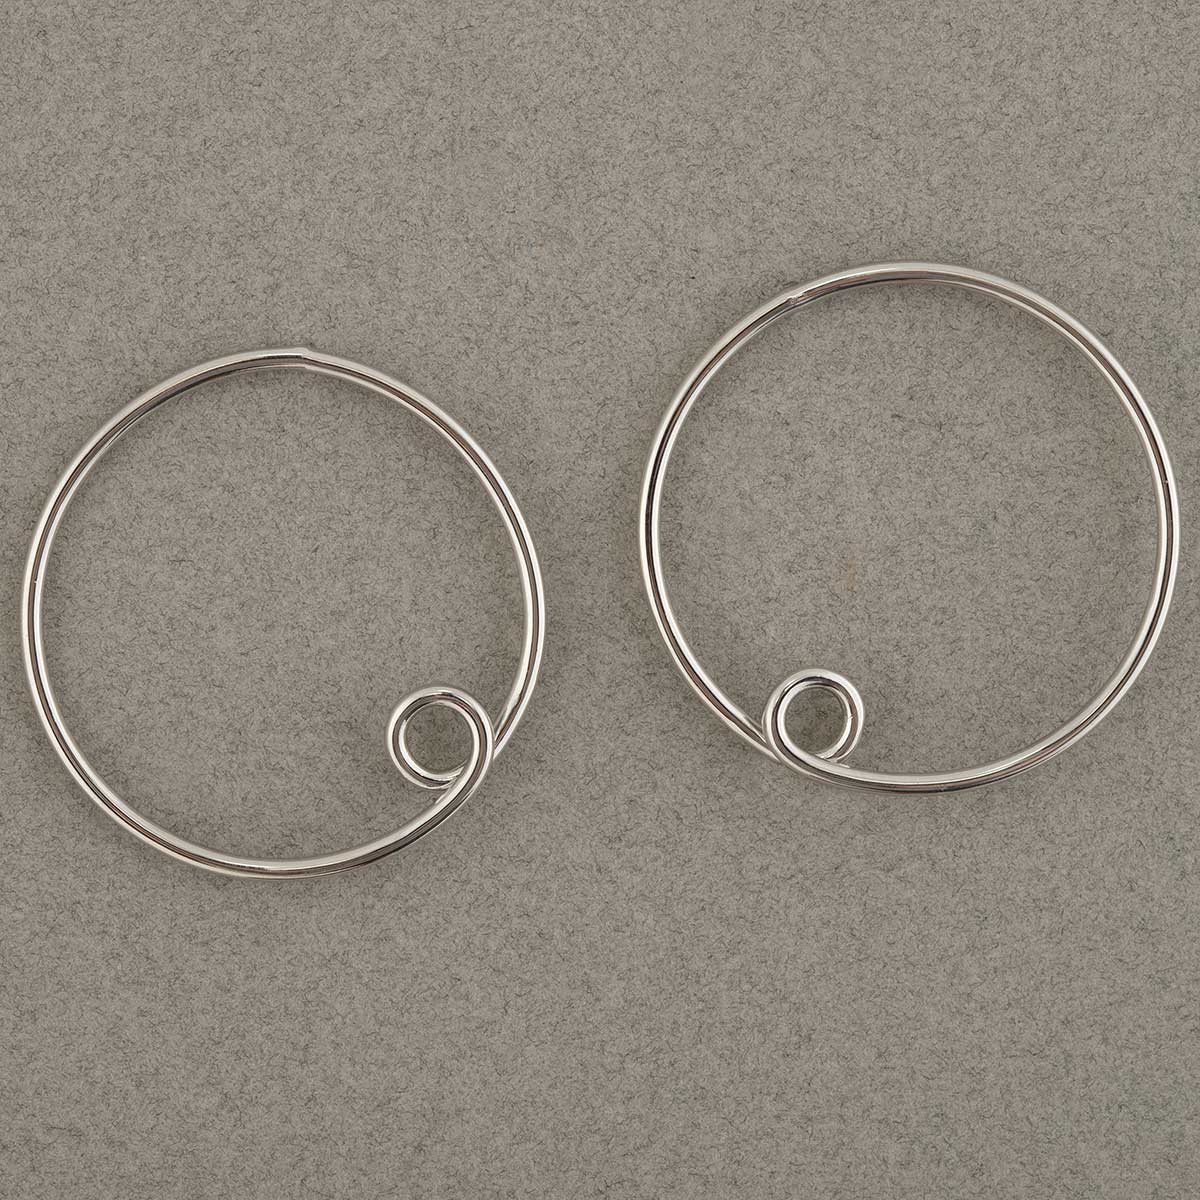 Silver Loopy Hoop Post Earrings 1.5"x1.5"